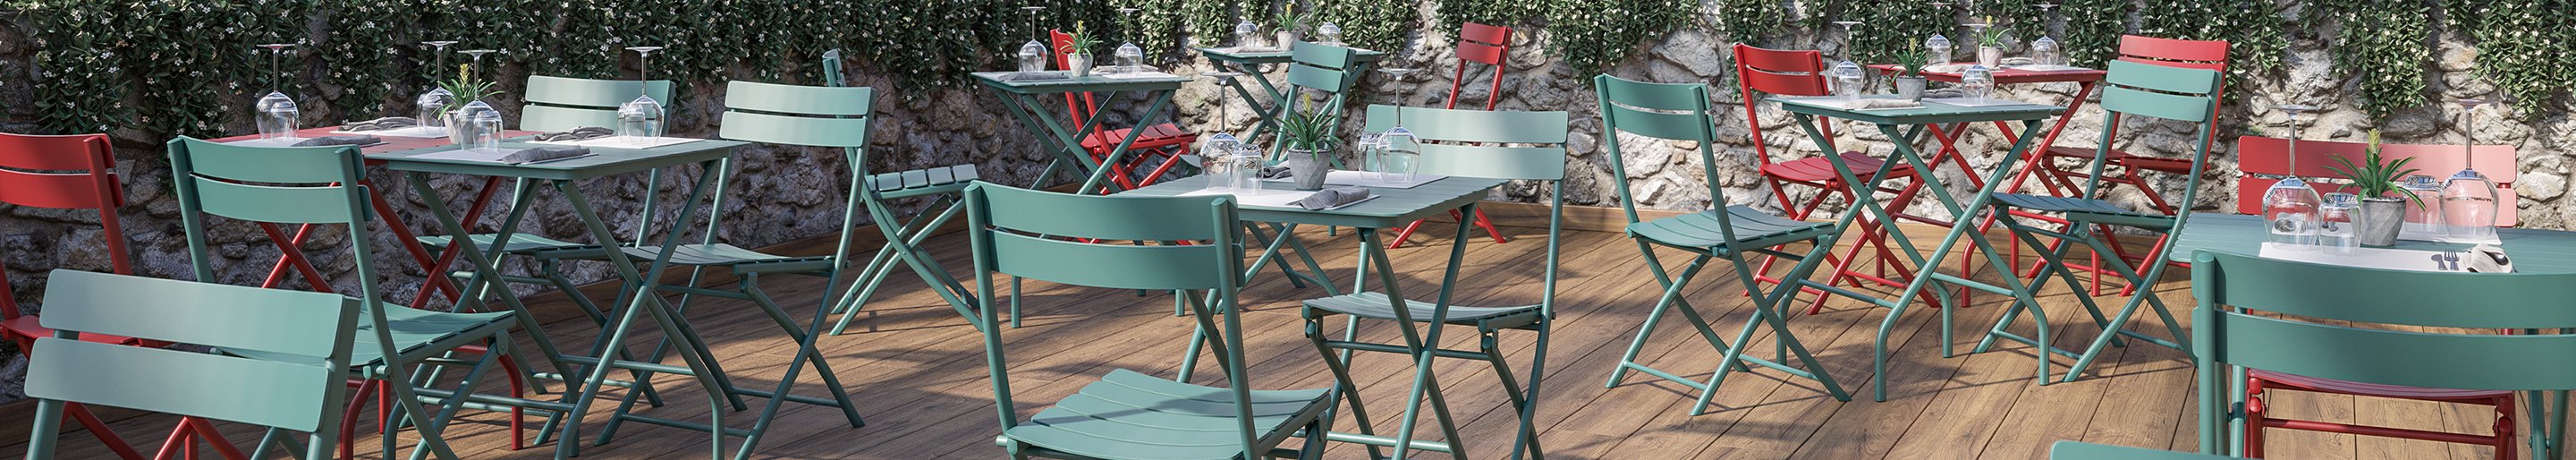 Outdoor Möbel für Gastronomie und Hotellerie und Biergarten